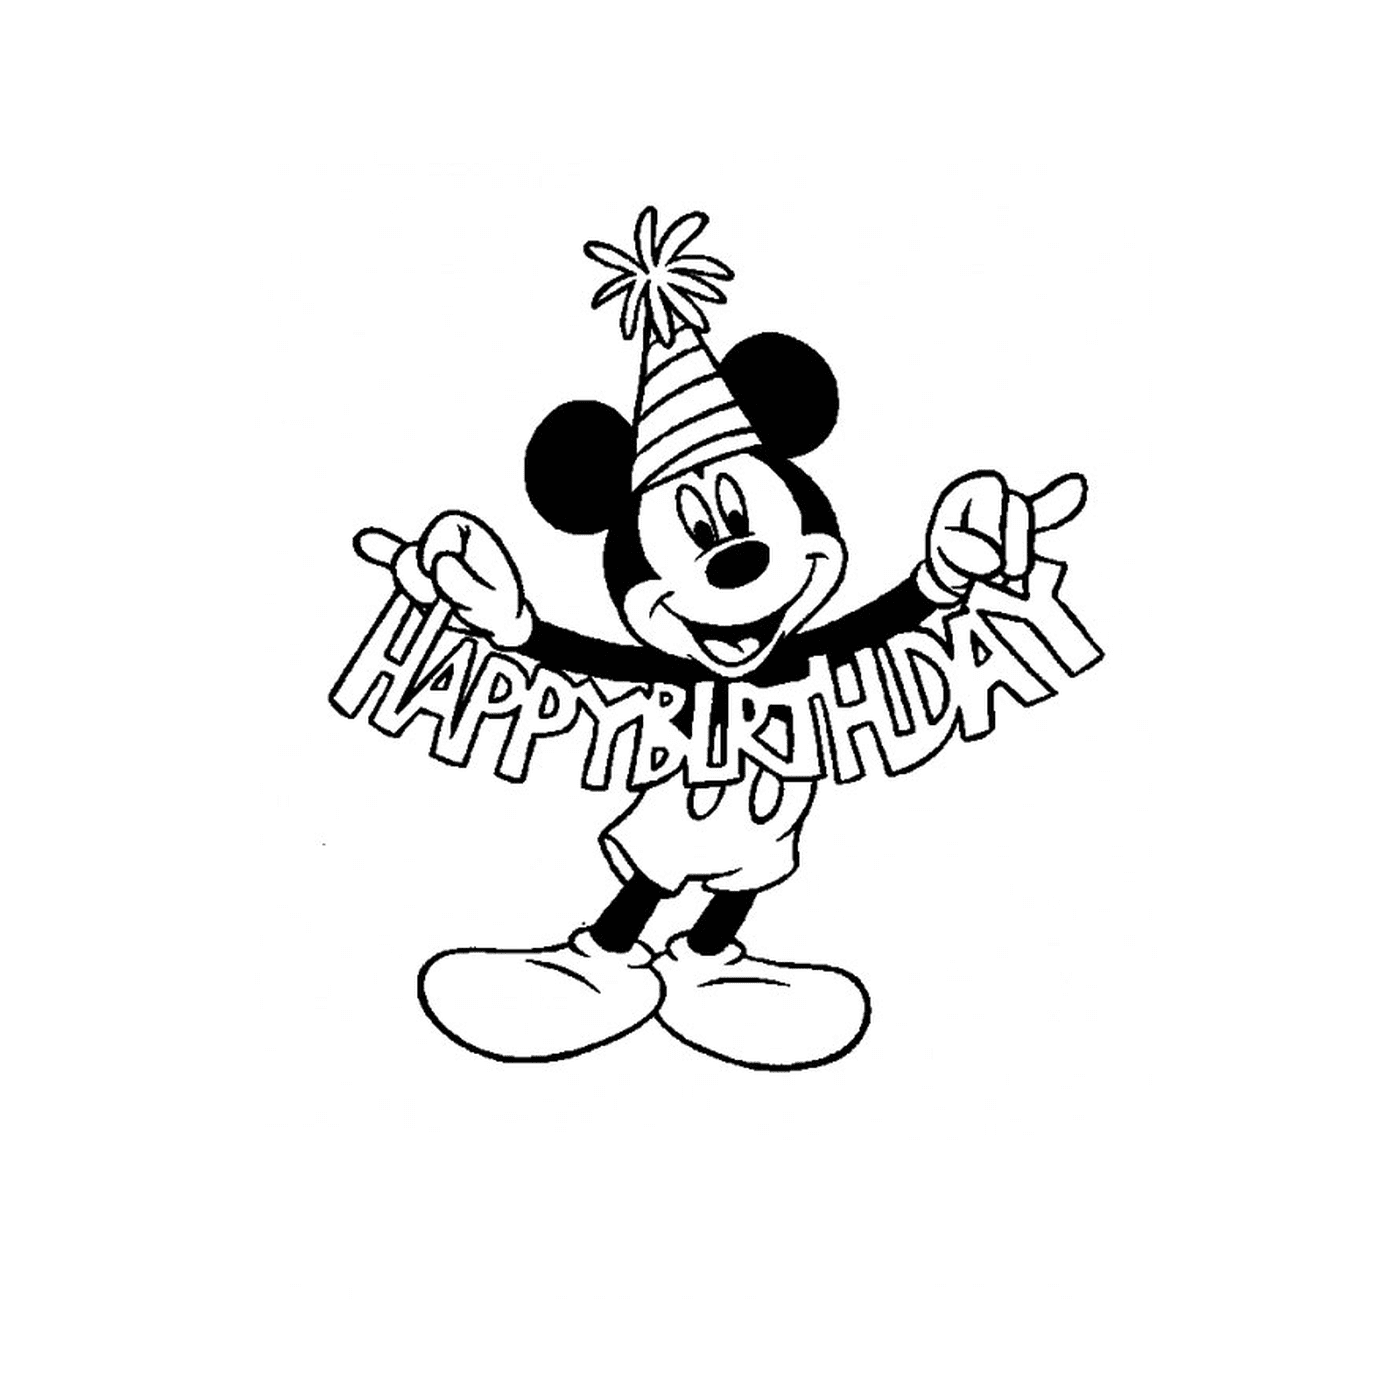  Mickey Mouse sosteniendo un signo de feliz cumpleaños 